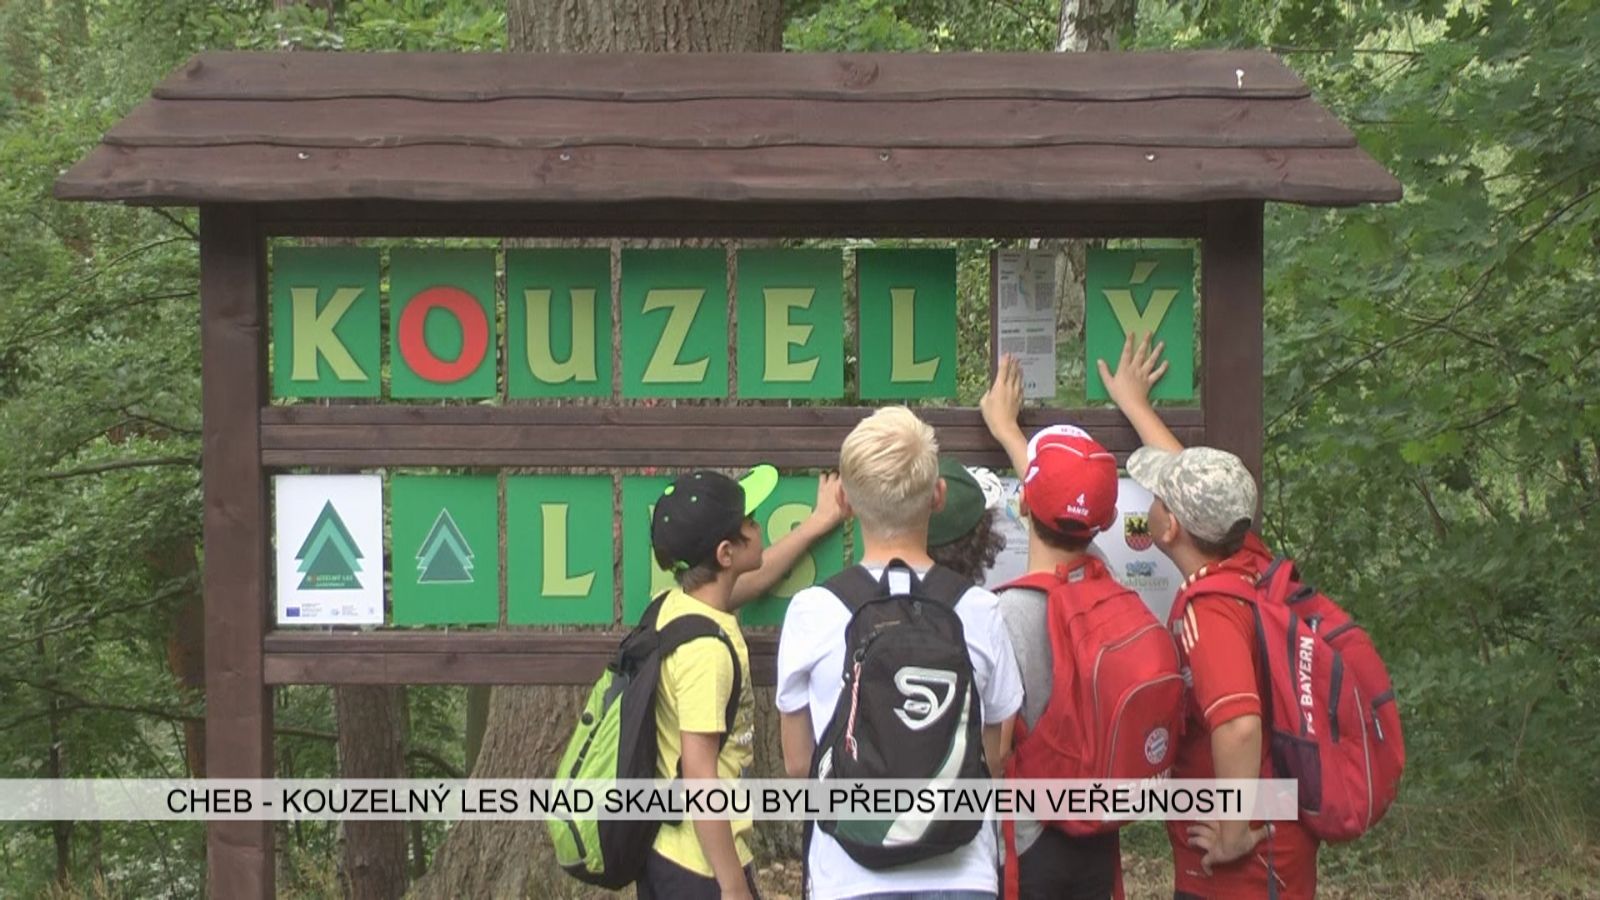 Cheb: Kouzelný les nad Skalkou byl představen veřejnosti (TV Západ)